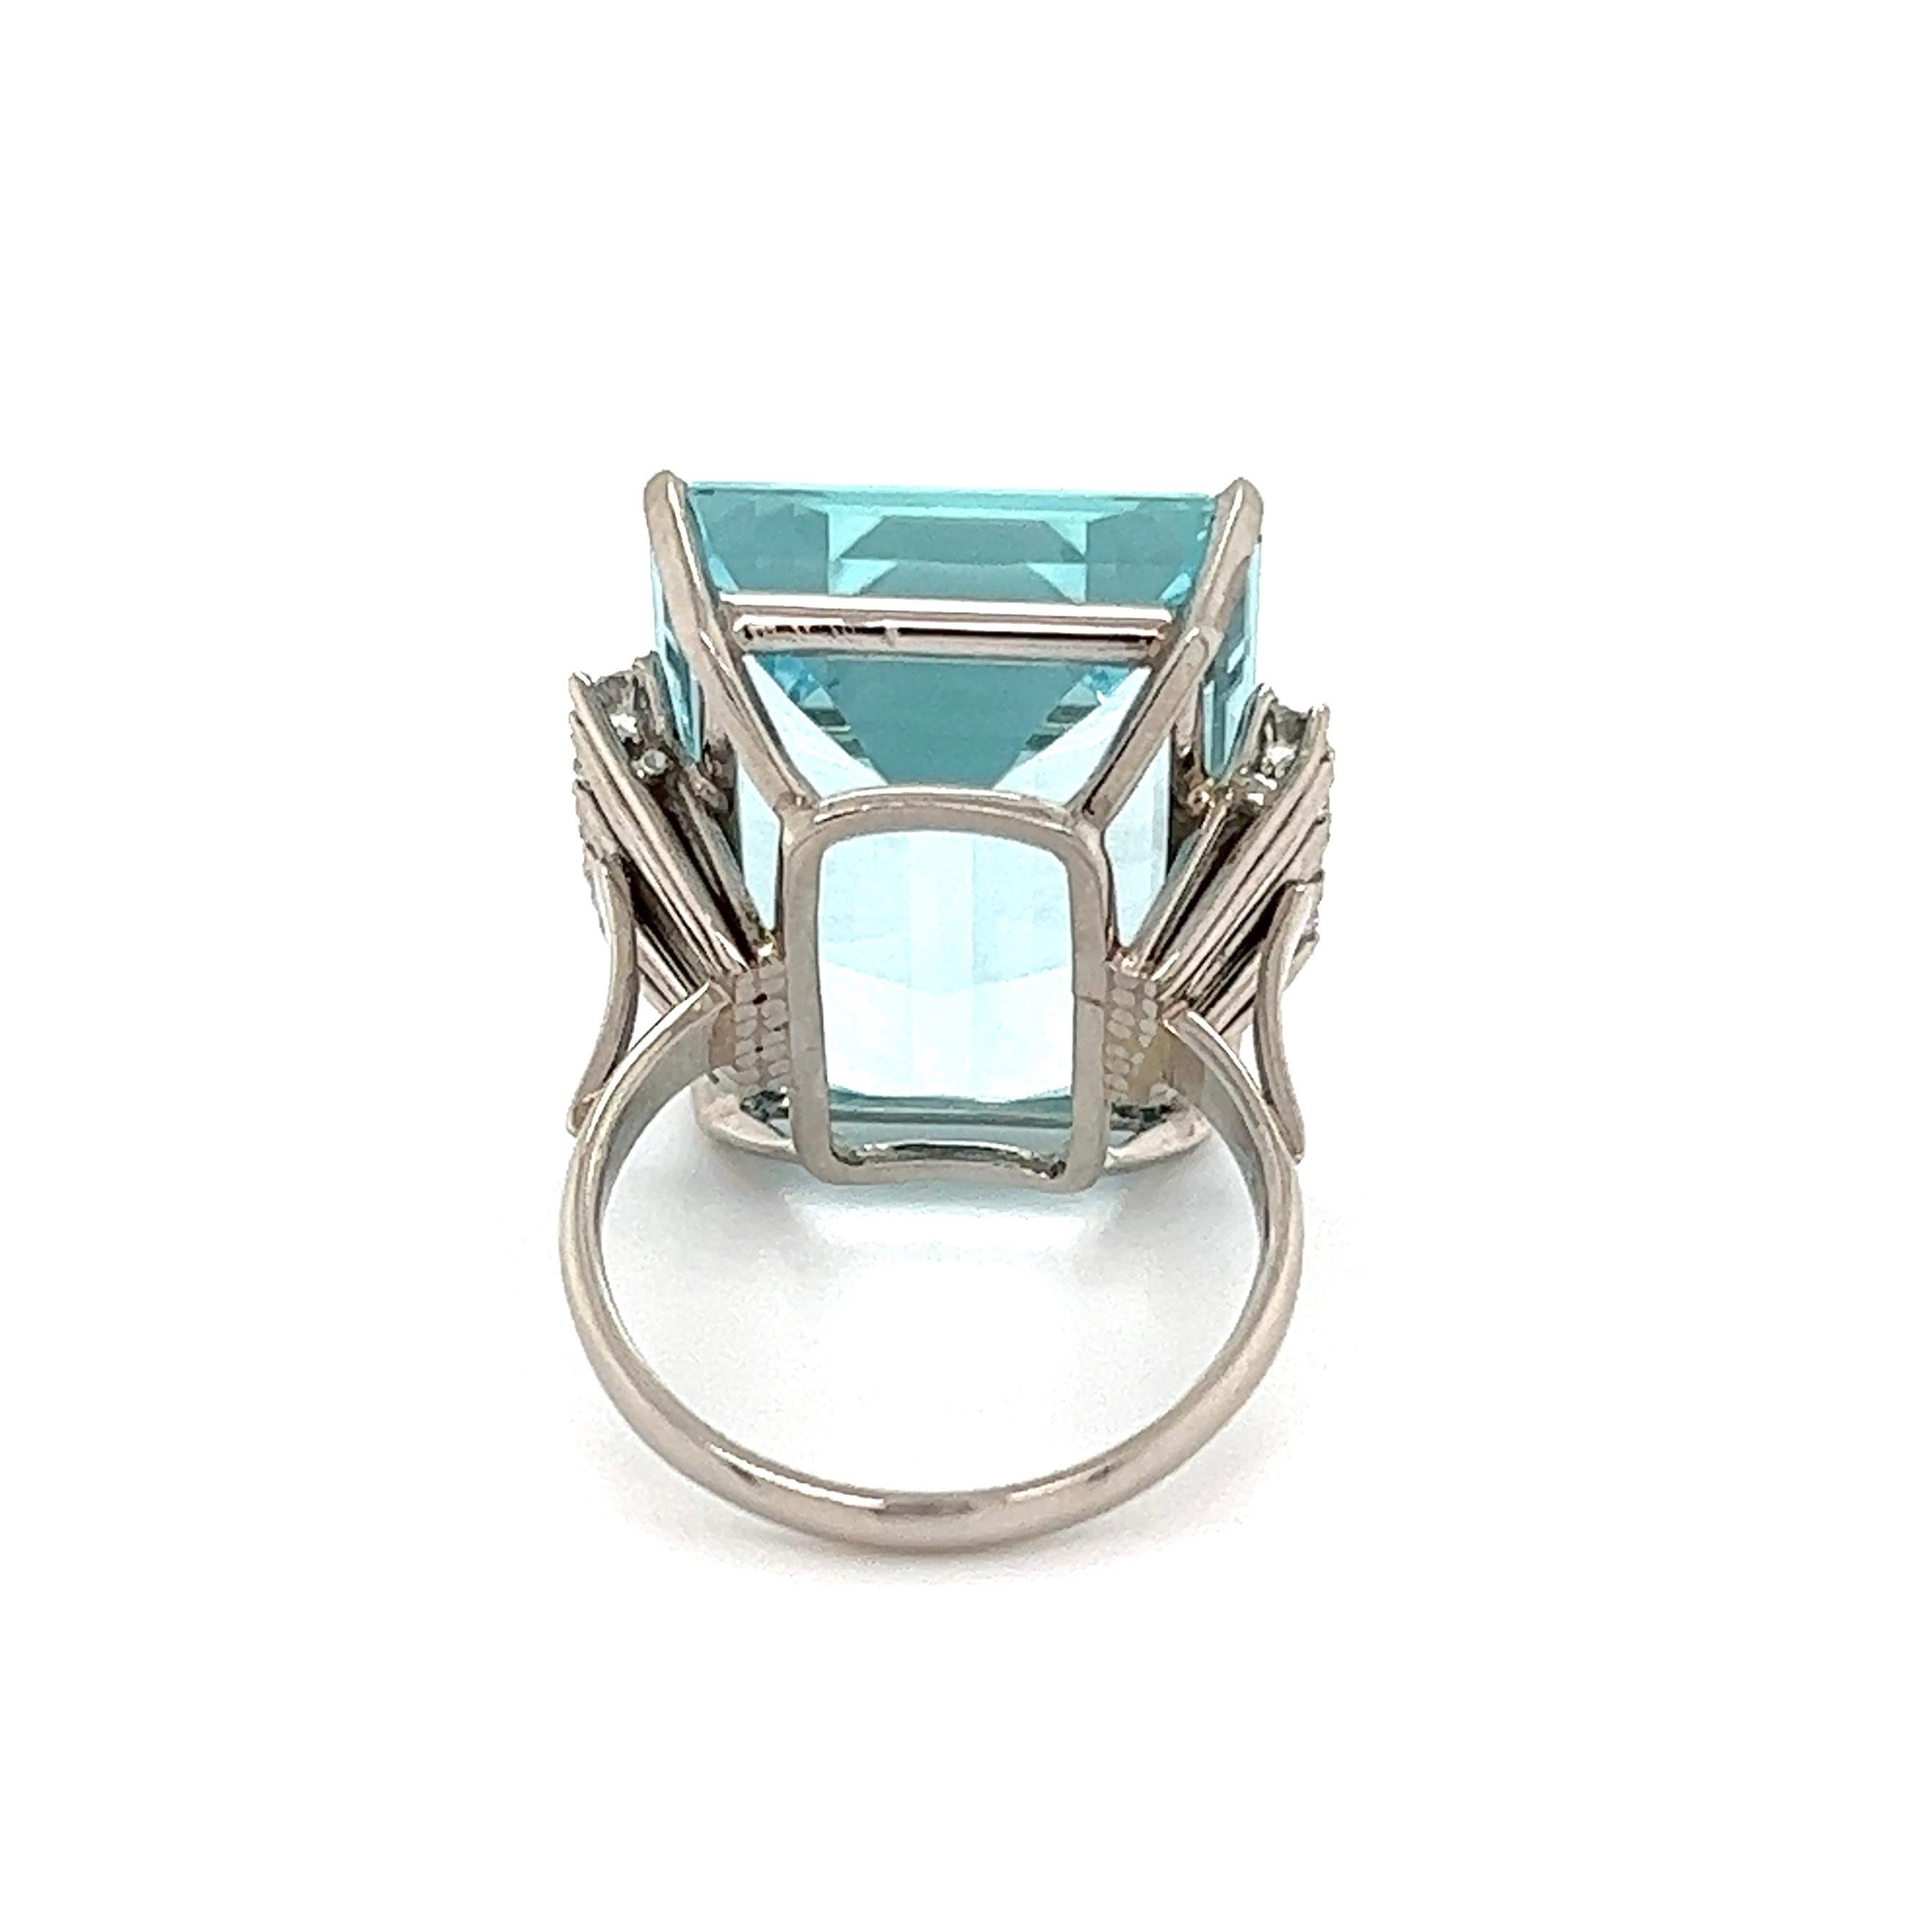 30 carat aquamarine ring